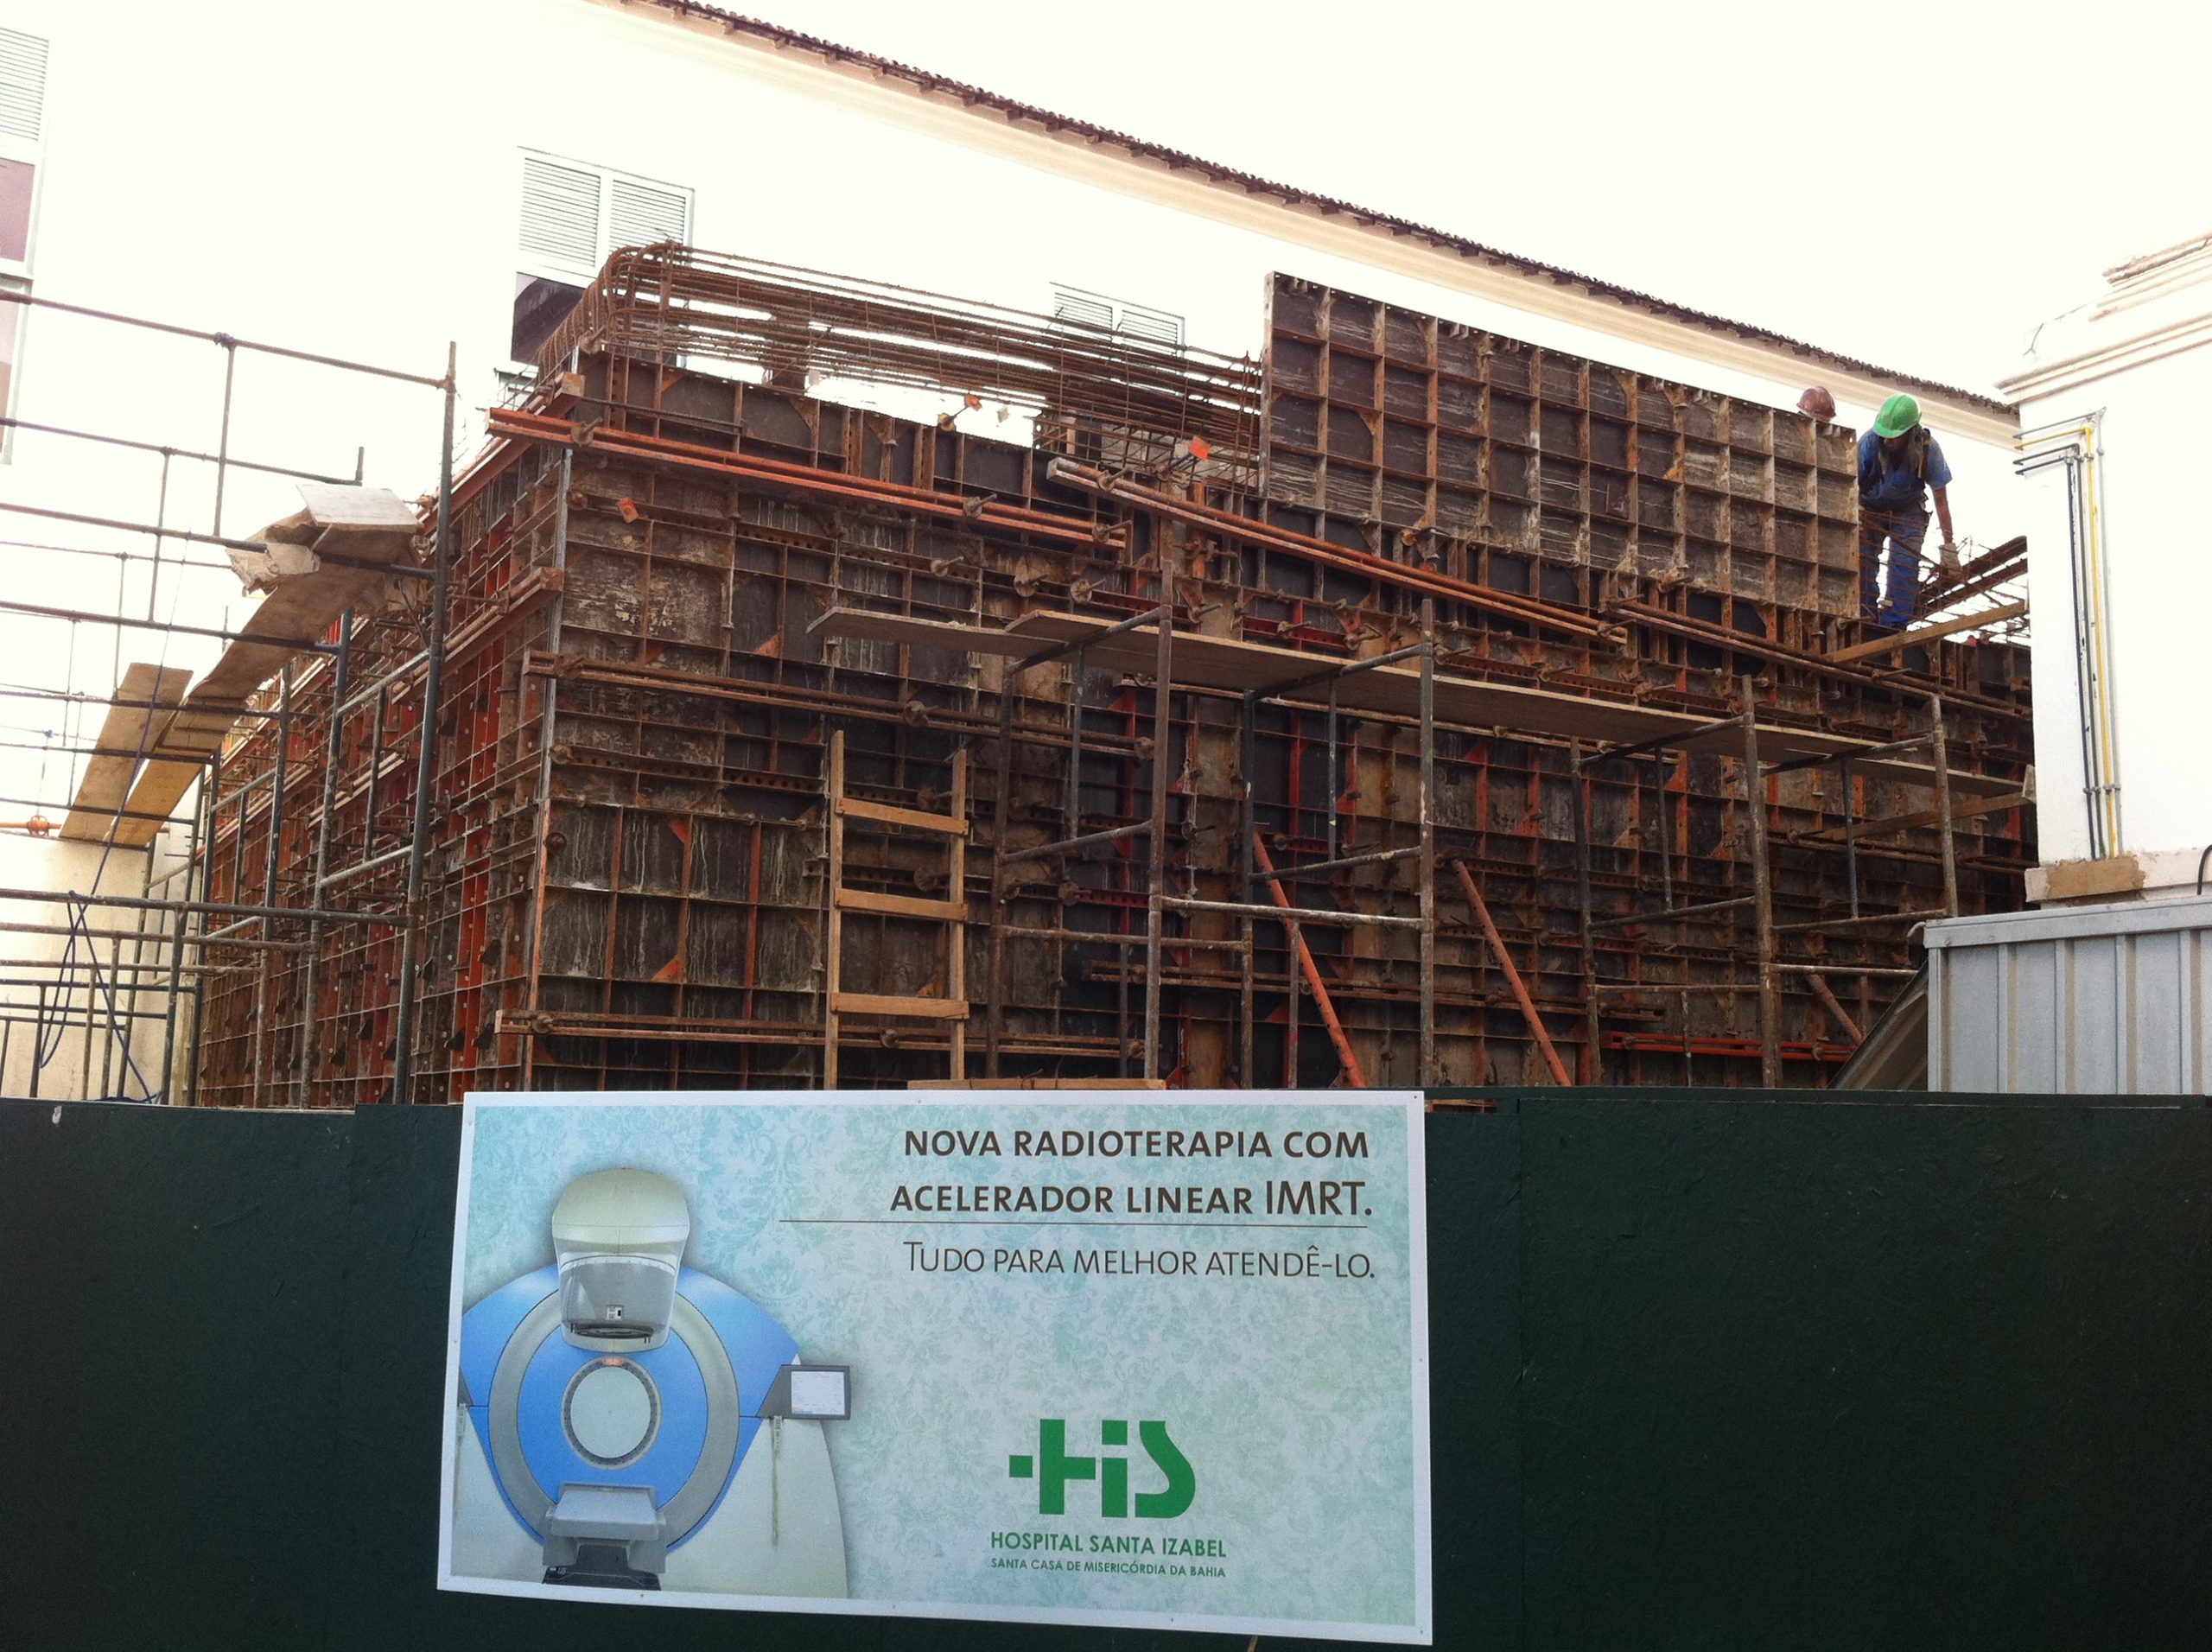 Construção da Nova Radioterapia com Acelerador Linear IMRT | Hospital Santa Isabel – Salvador/BA - Foto 2